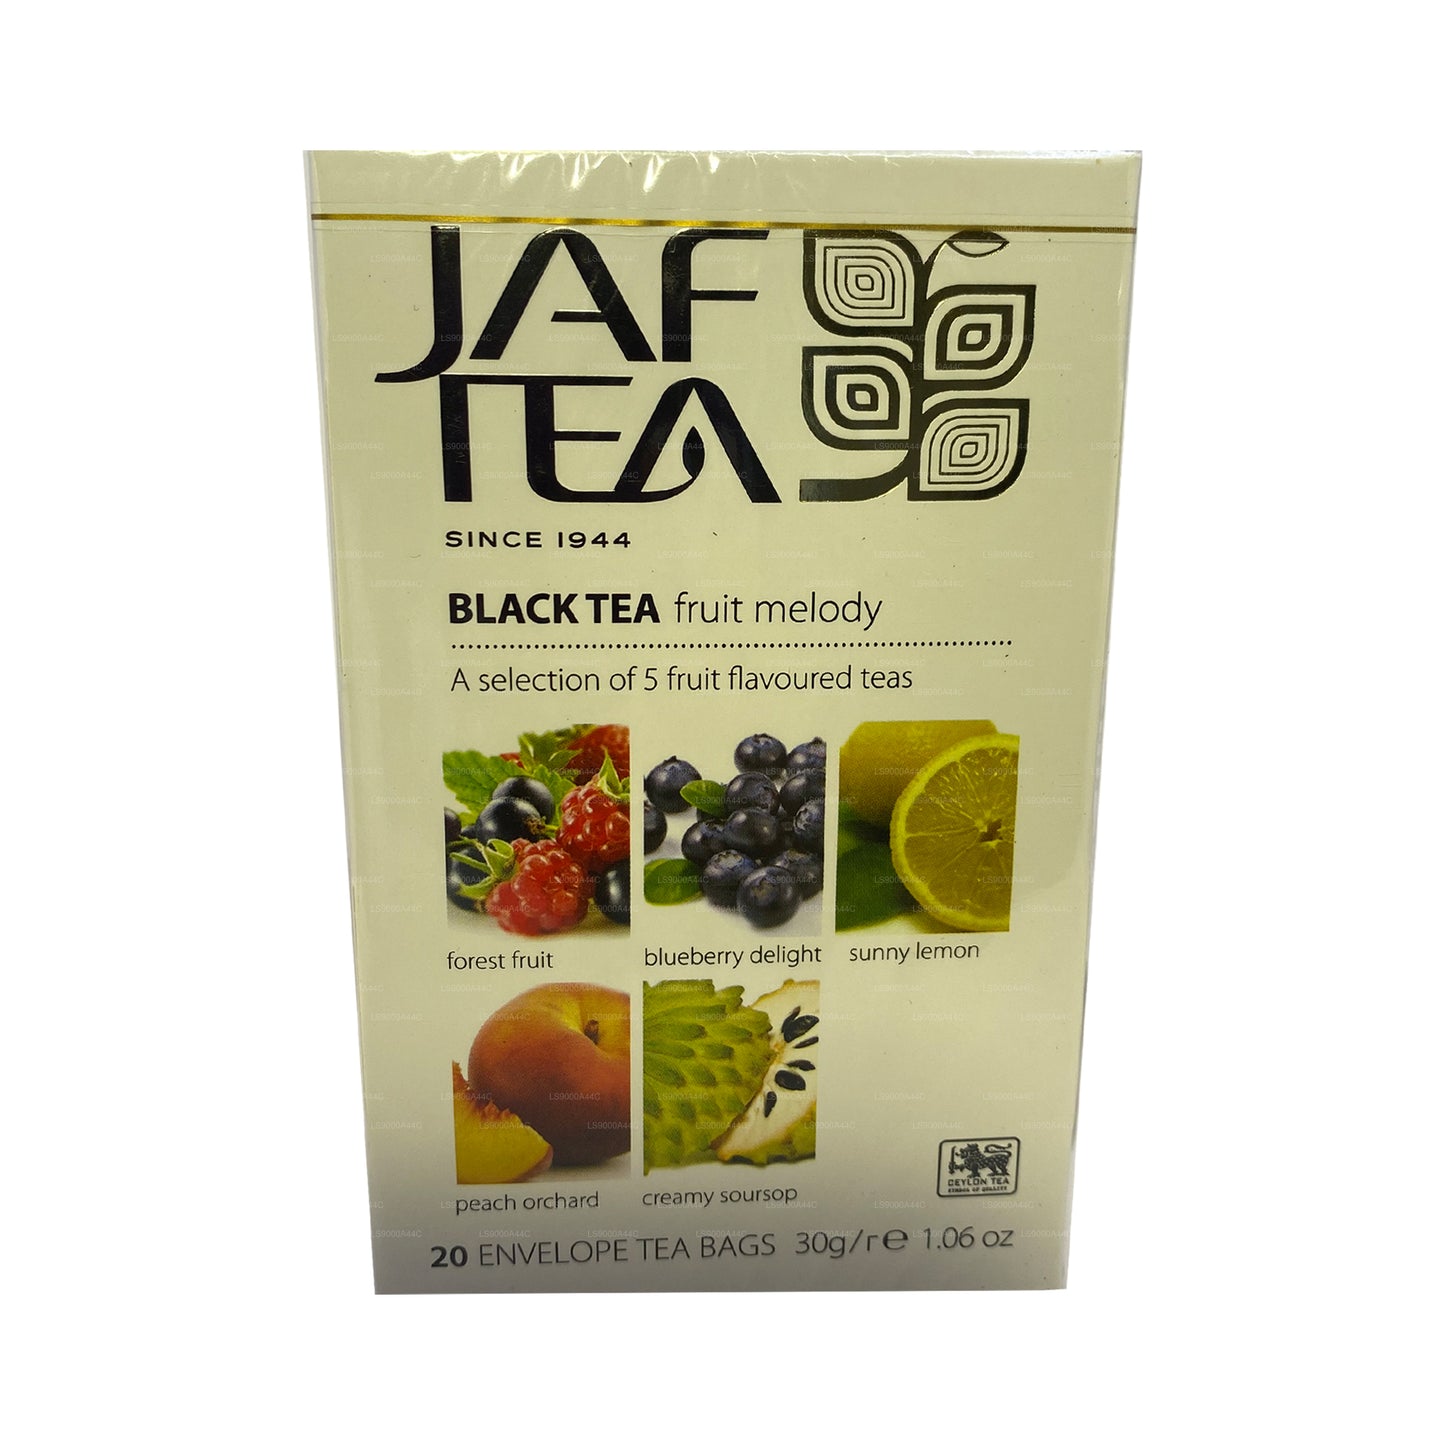 مجموعة جاف تي للفواكه النقية بنكهة الشاي الأسود (30 جم) 20 كيس شاي